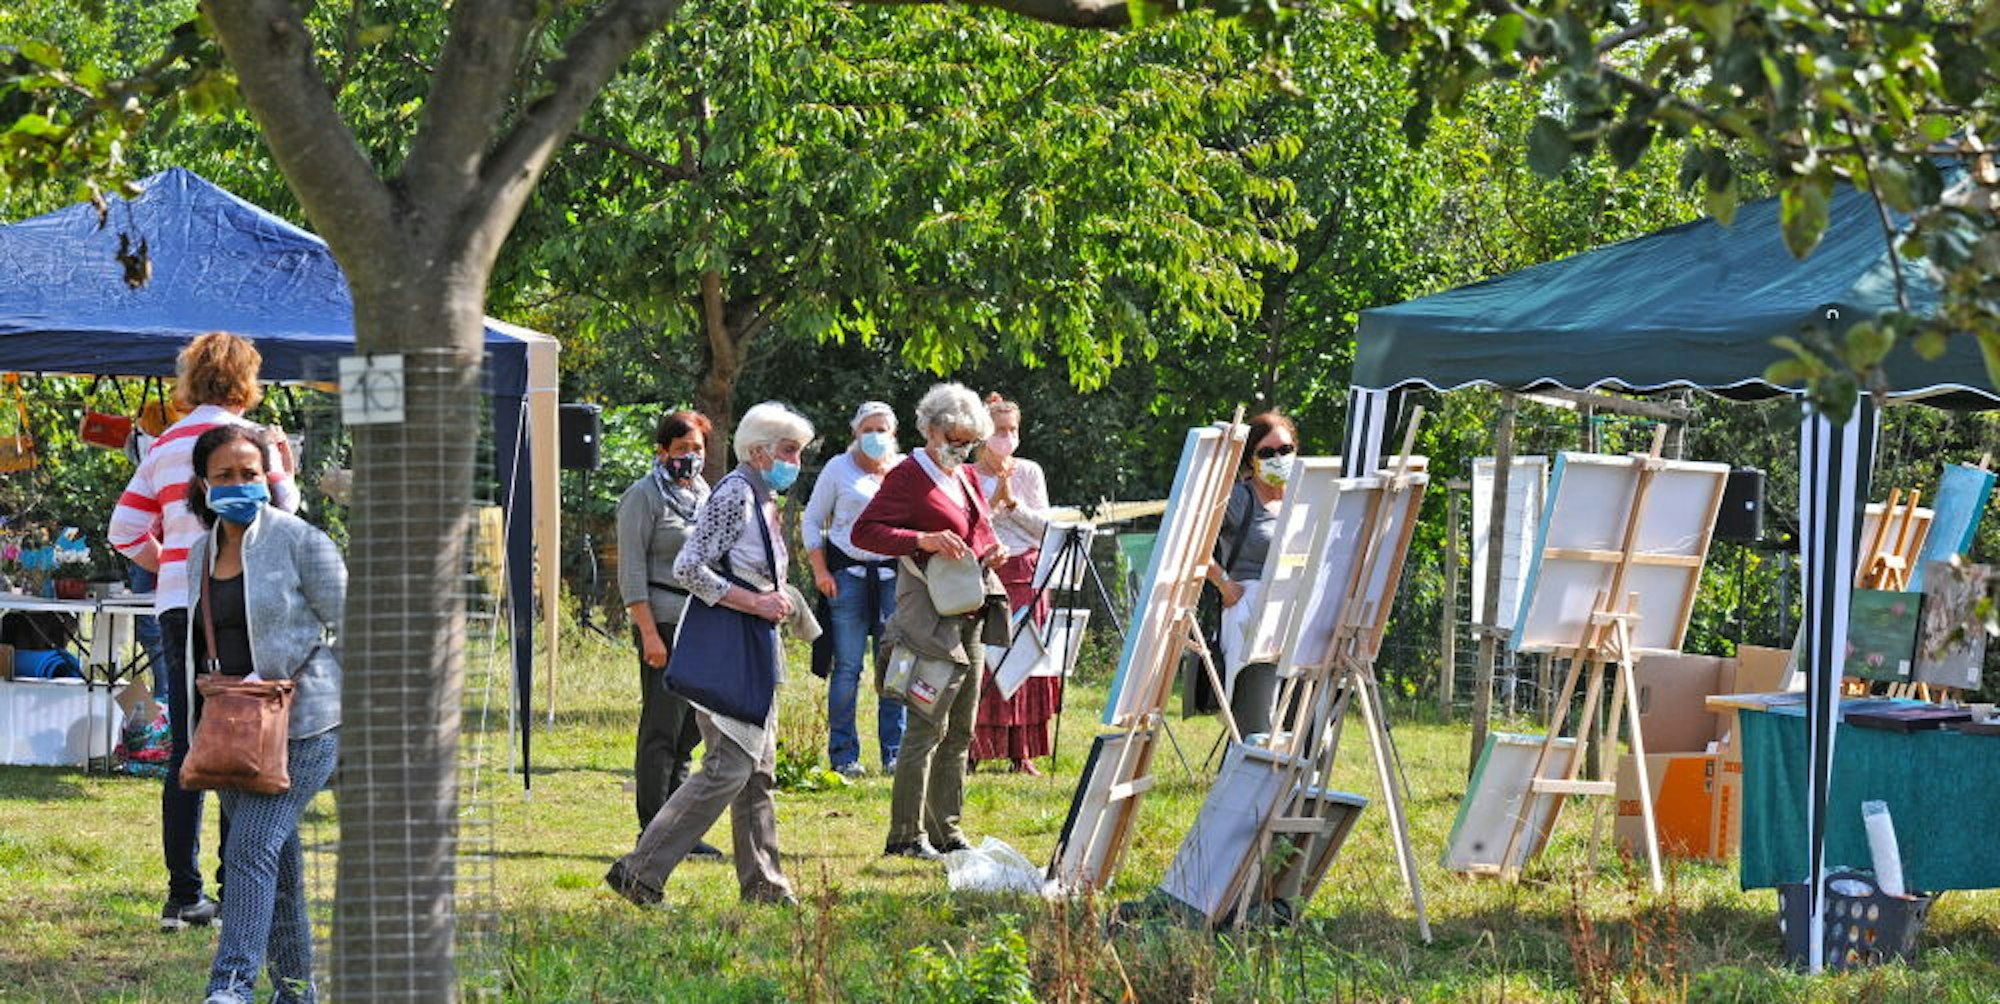 Der Kunstbasar unter freiem Himmel zwischen Obstbäumen erfreute am sonnigen Sonntag zahlreiche Besucher.